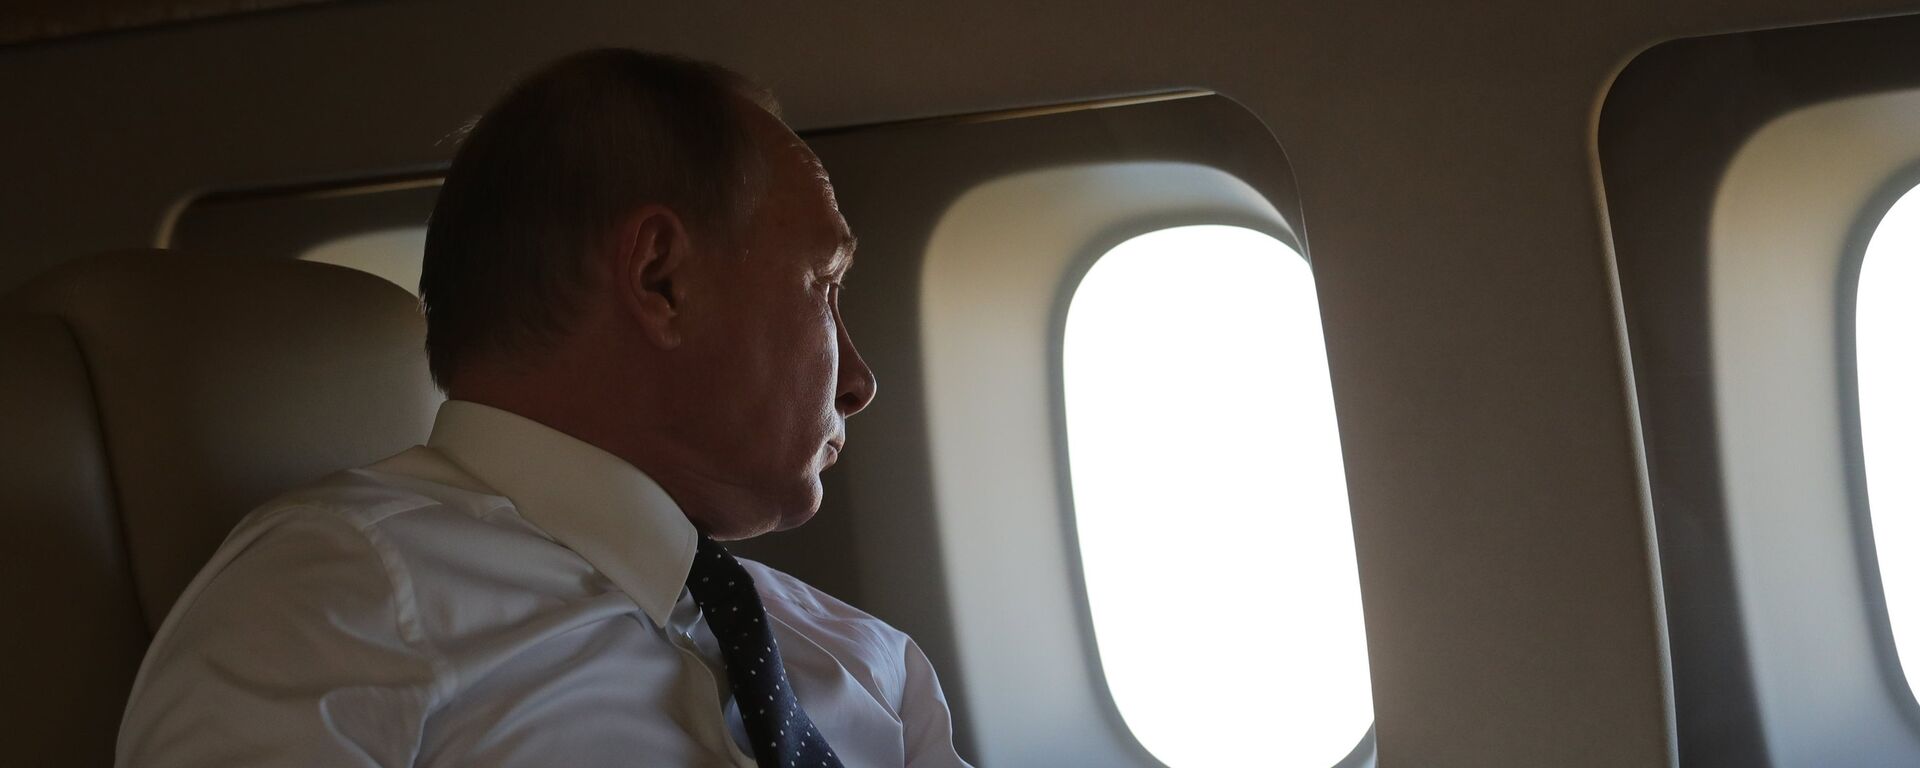 Vladímir Putin, presidente de Rusia, a bordo de un avión  - Sputnik Mundo, 1920, 26.06.2022